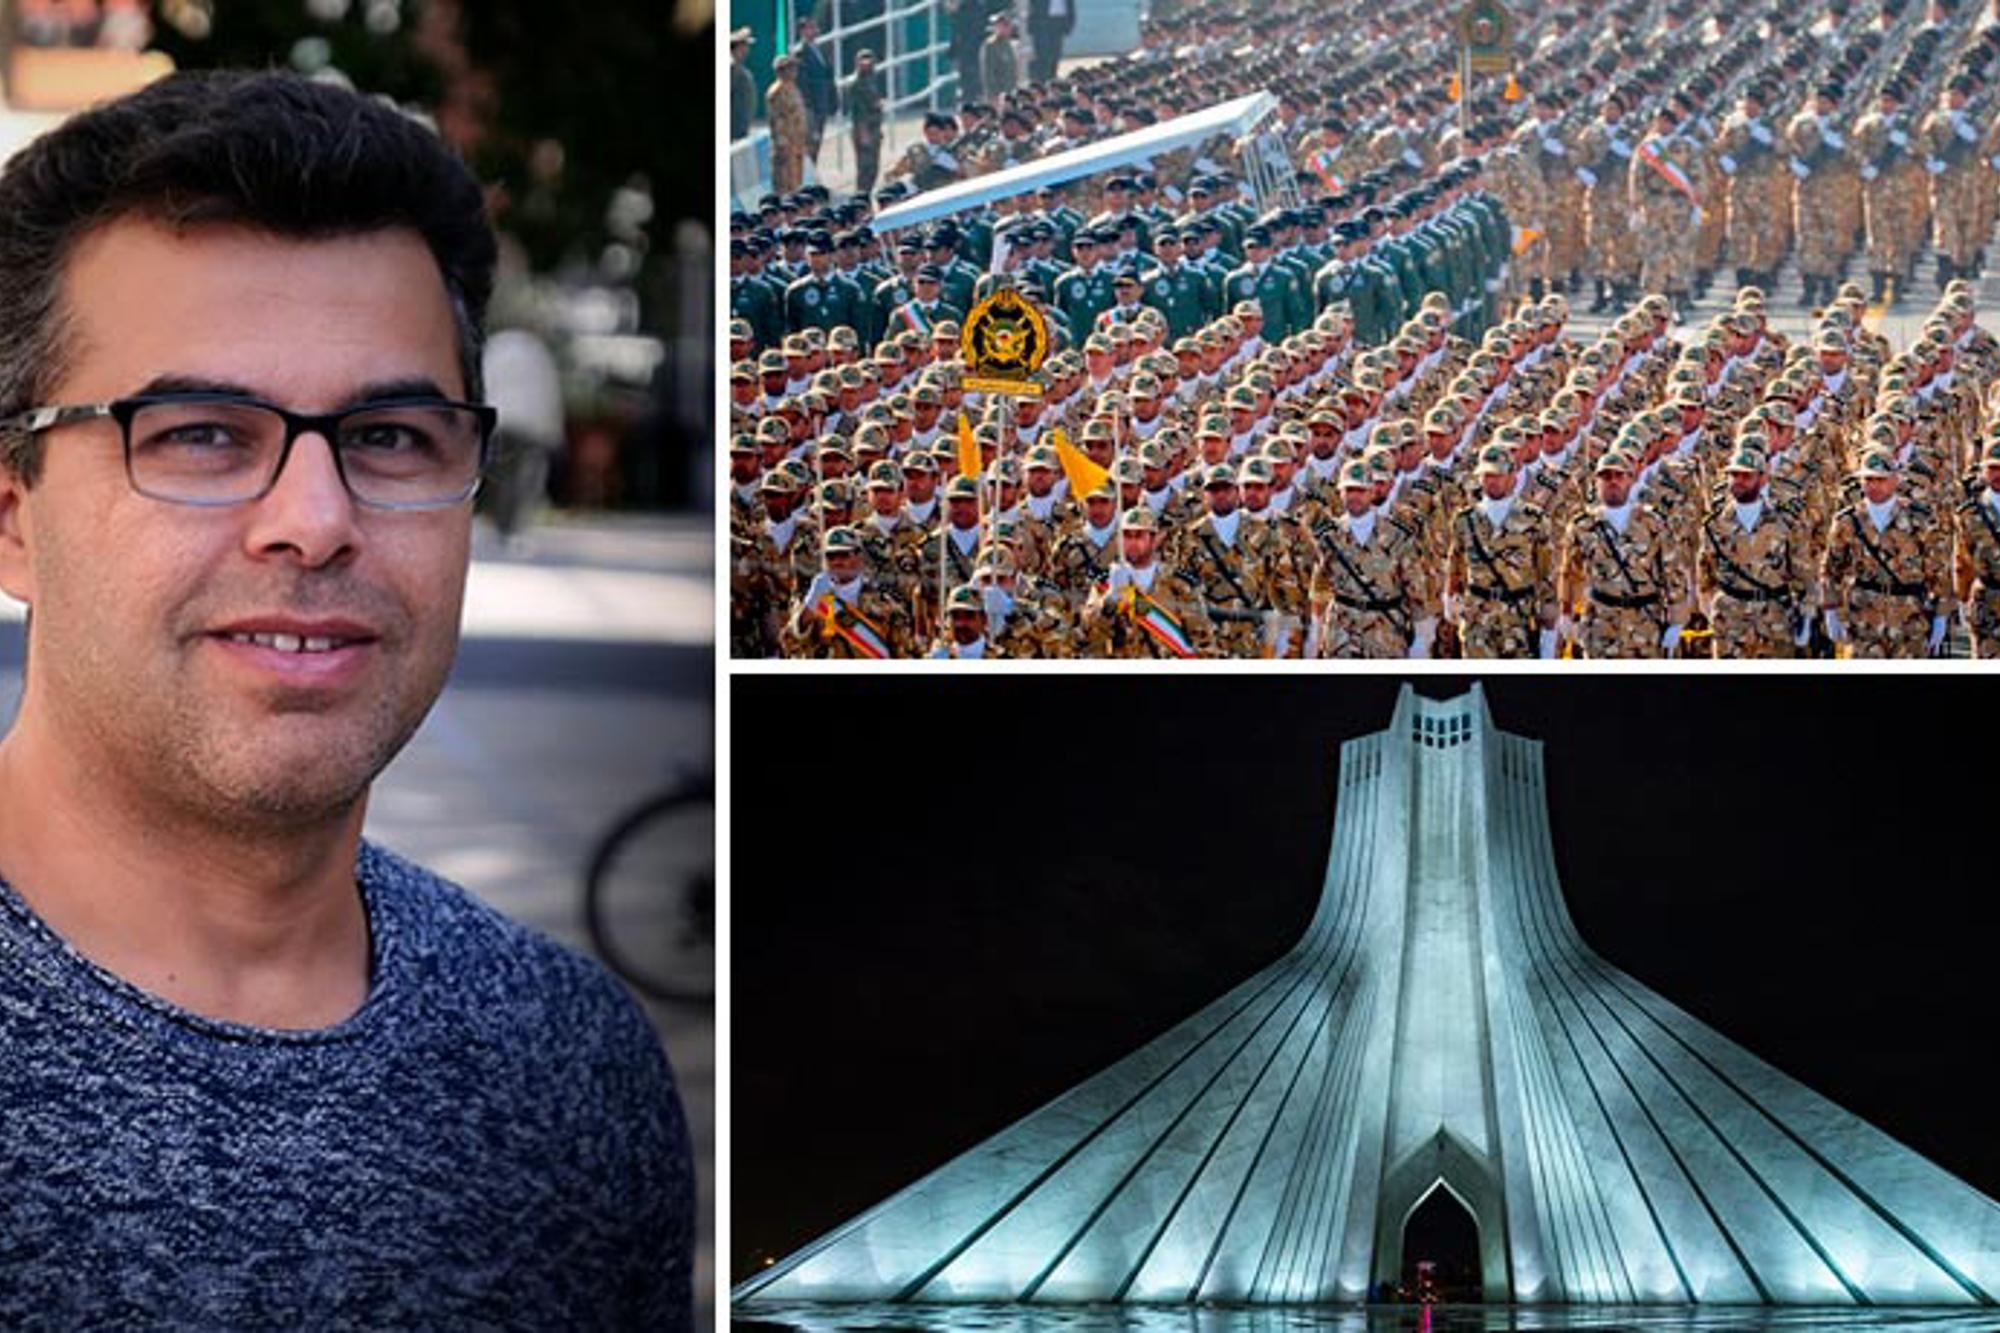 Till vänster: Porträttbild av Hossein Bahrami. Till höger: Två bilder tagna från Iran. Den ena bilden är på en hög byggnad och den andra är på en soldatmarsch.